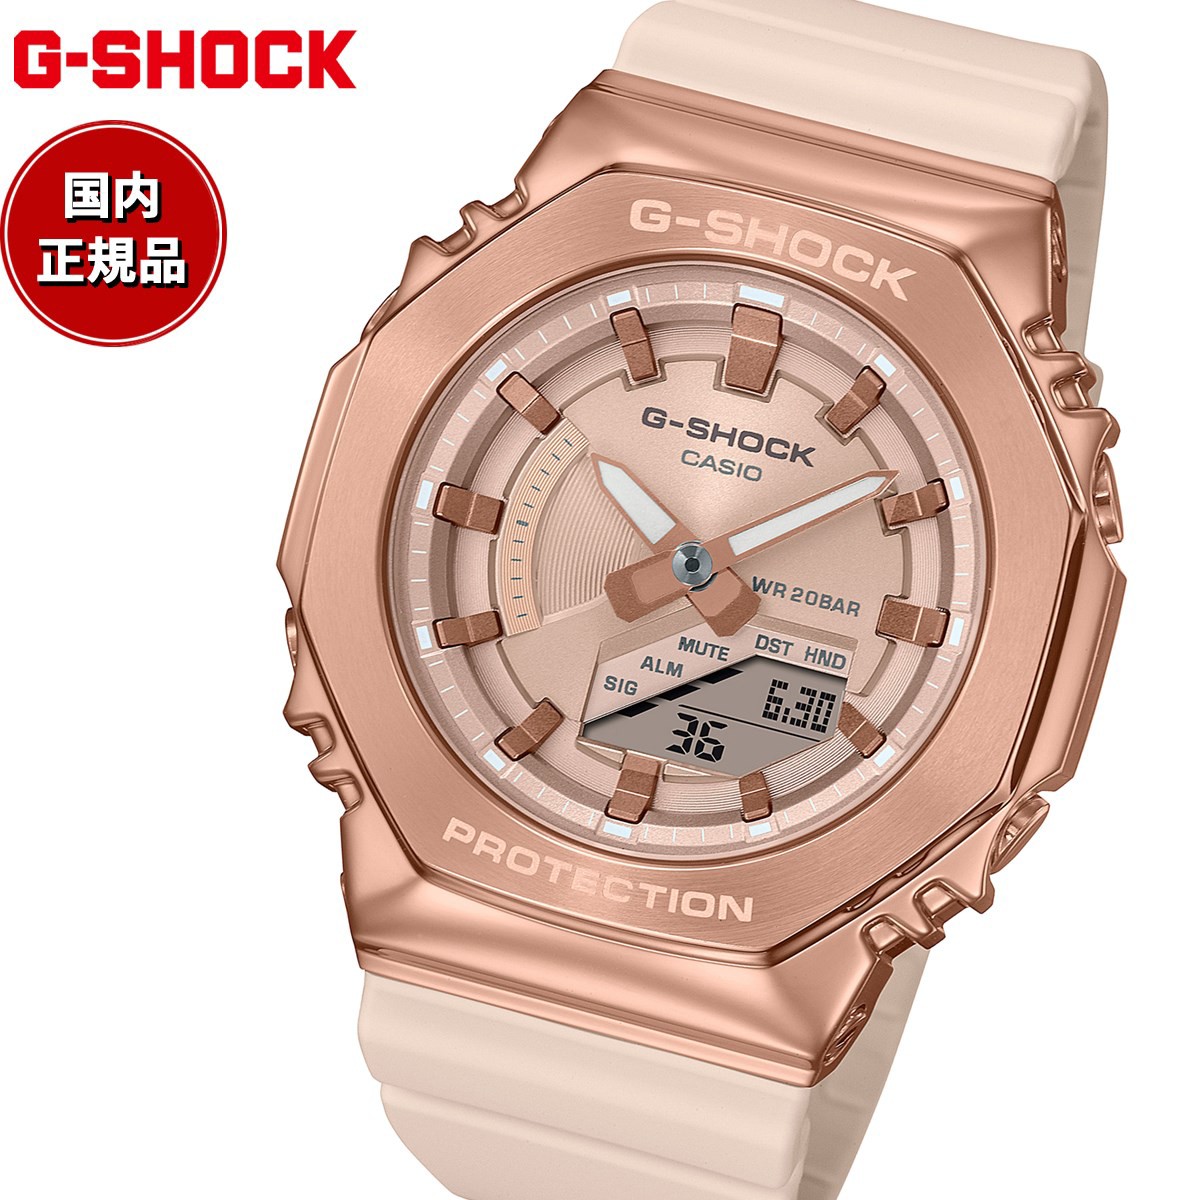 G-SHOCK カシオ Gショック CASIO アナデジ 腕時計 メンズ レディース GM-S2100PG-4AJF ピンクゴールド ピンクベージュ メタルカバー コンパクトサイズ